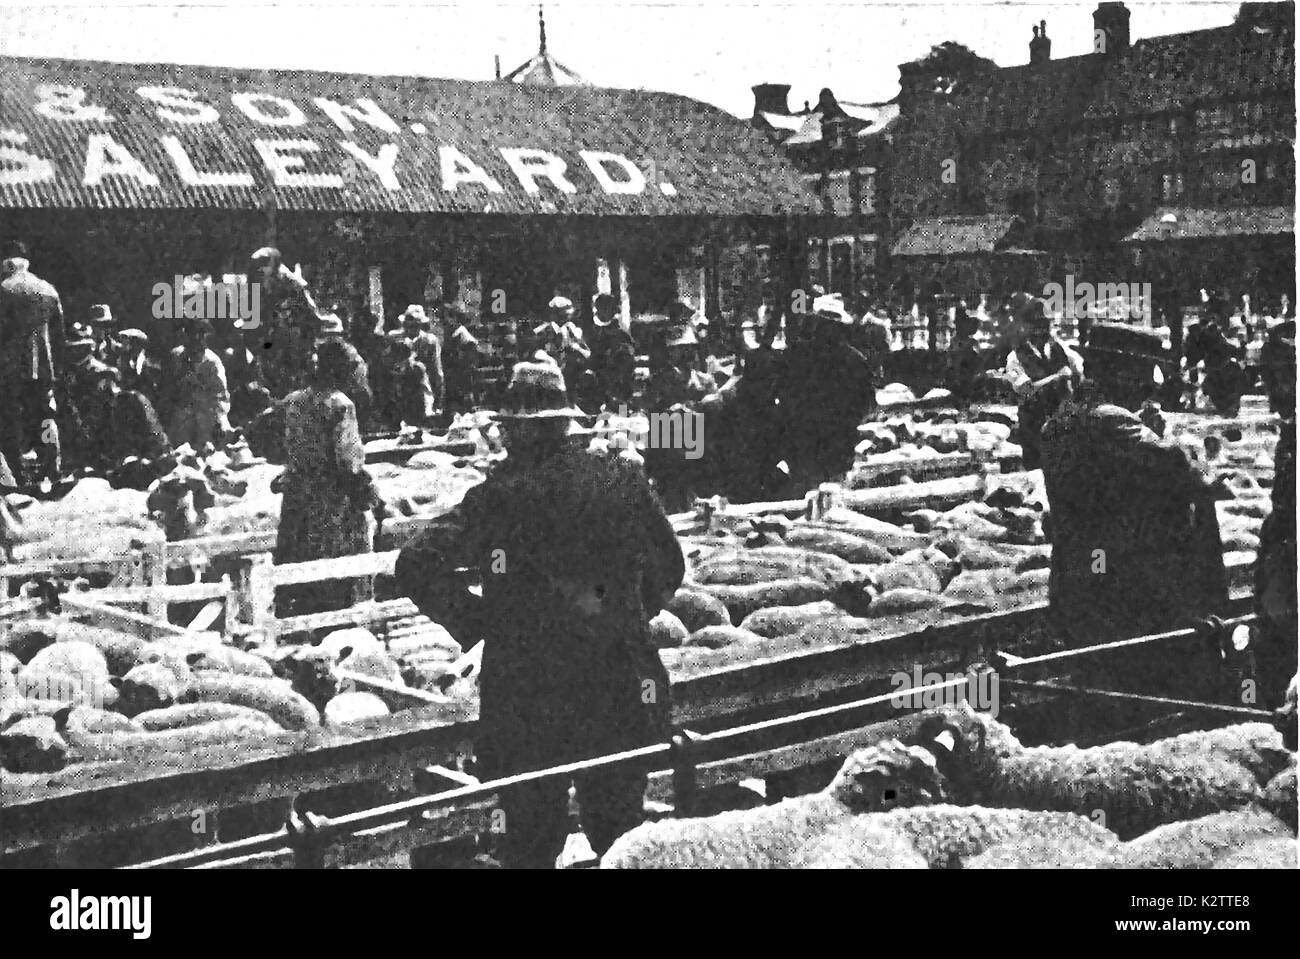 Un journal photo de Colchester (UK) Les agriculteurs du marché du bétail dans les années 1940 Banque D'Images